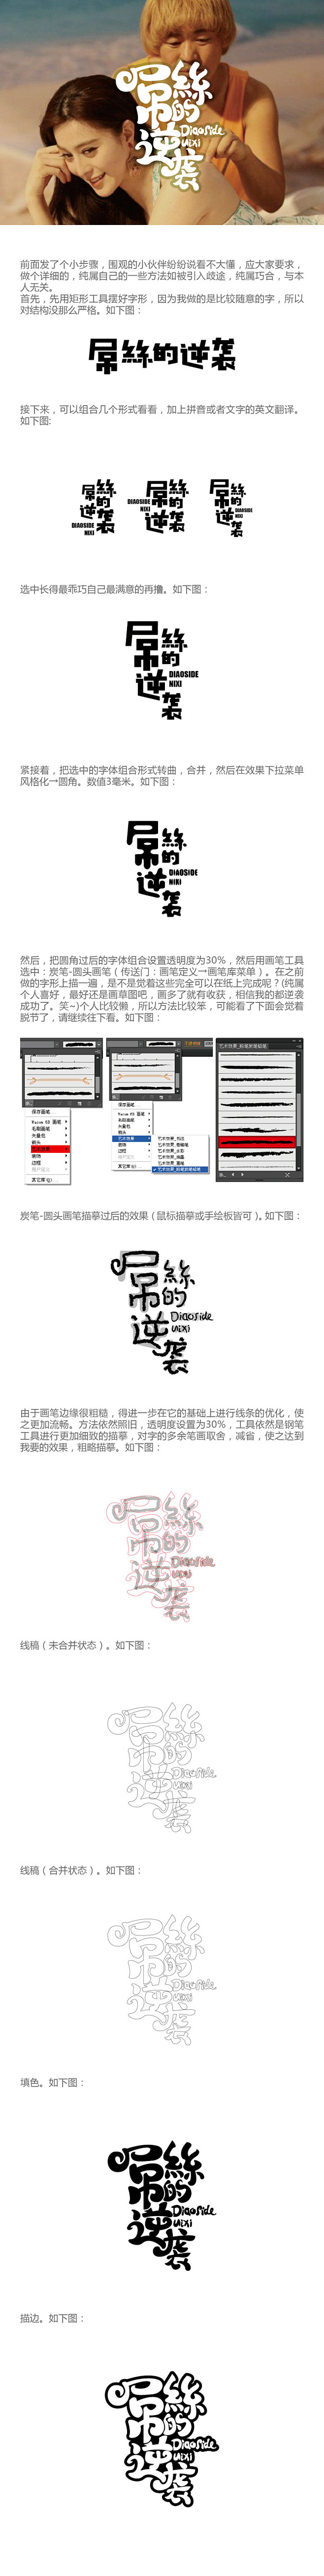 中文手写画毛卡通形字体设计教程